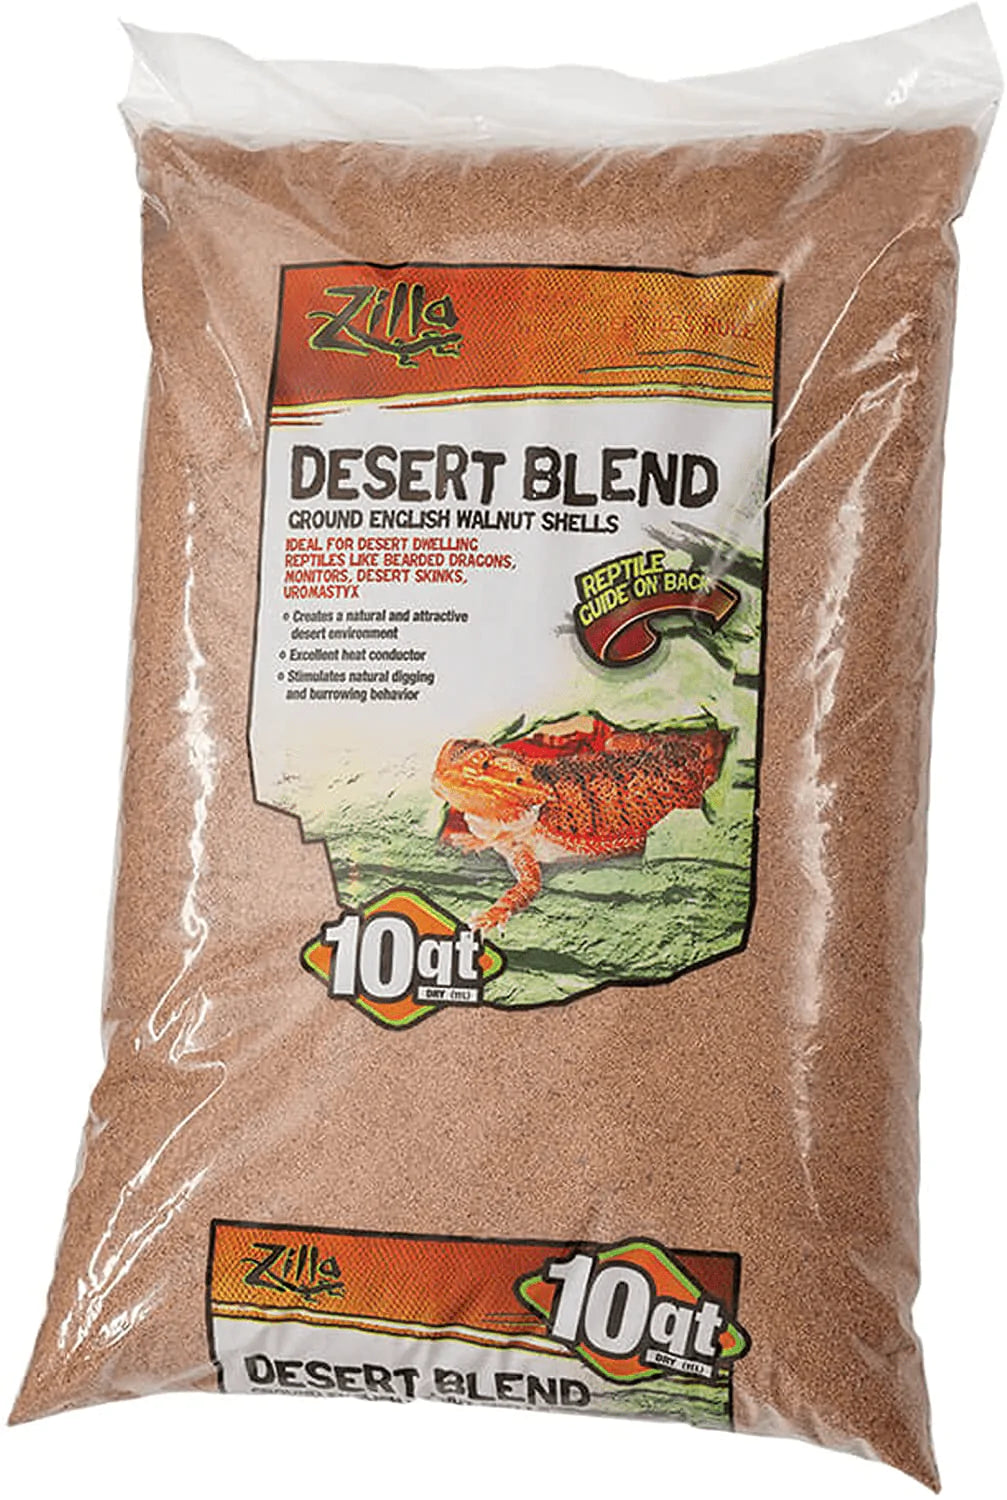 Zilla Ground English Walnut Shells Desert Blend Animals & Pet Supplies > Pet Supplies > Reptile & Amphibian Supplies > Reptile & Amphibian Substrates Zilla Standard Packaging 10-Quart Bag 